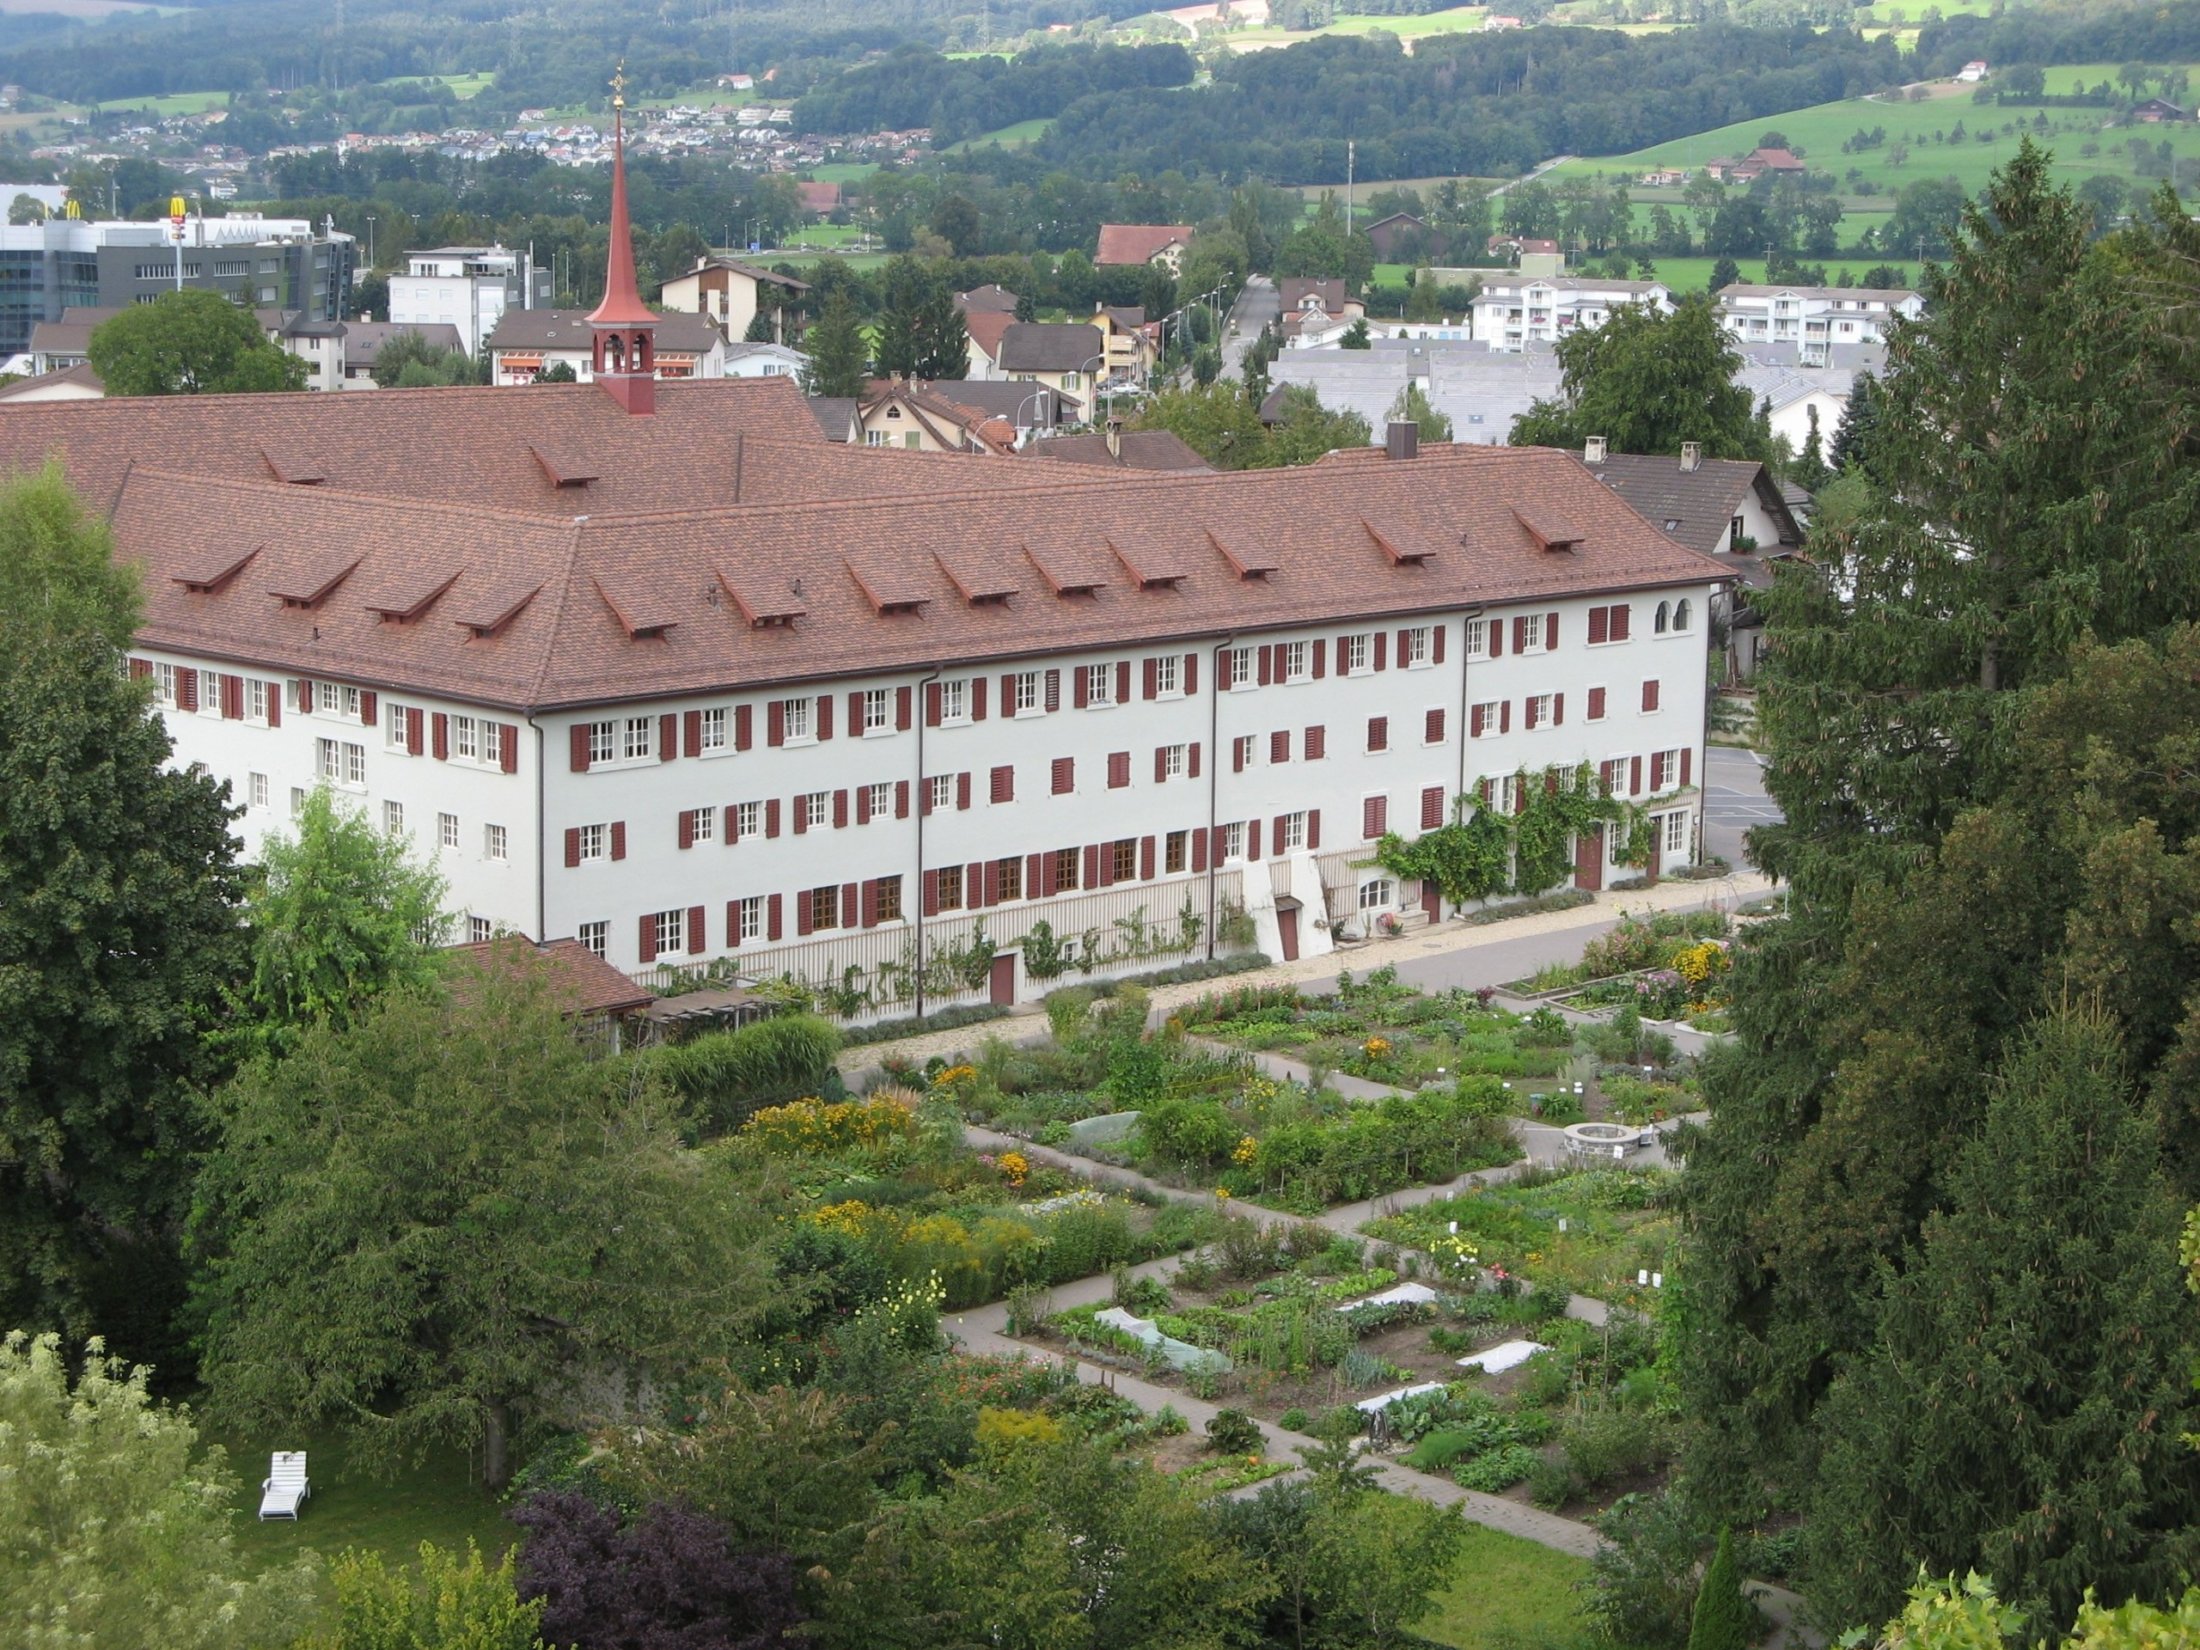 Der Klostergarten Sursee aus der Luft: hier gedeiht schon seit langer Zeit kostbare Vielfalt. Klöster haben seit Jahrhunderten immer auch Züchtungsarbeit geleistet.